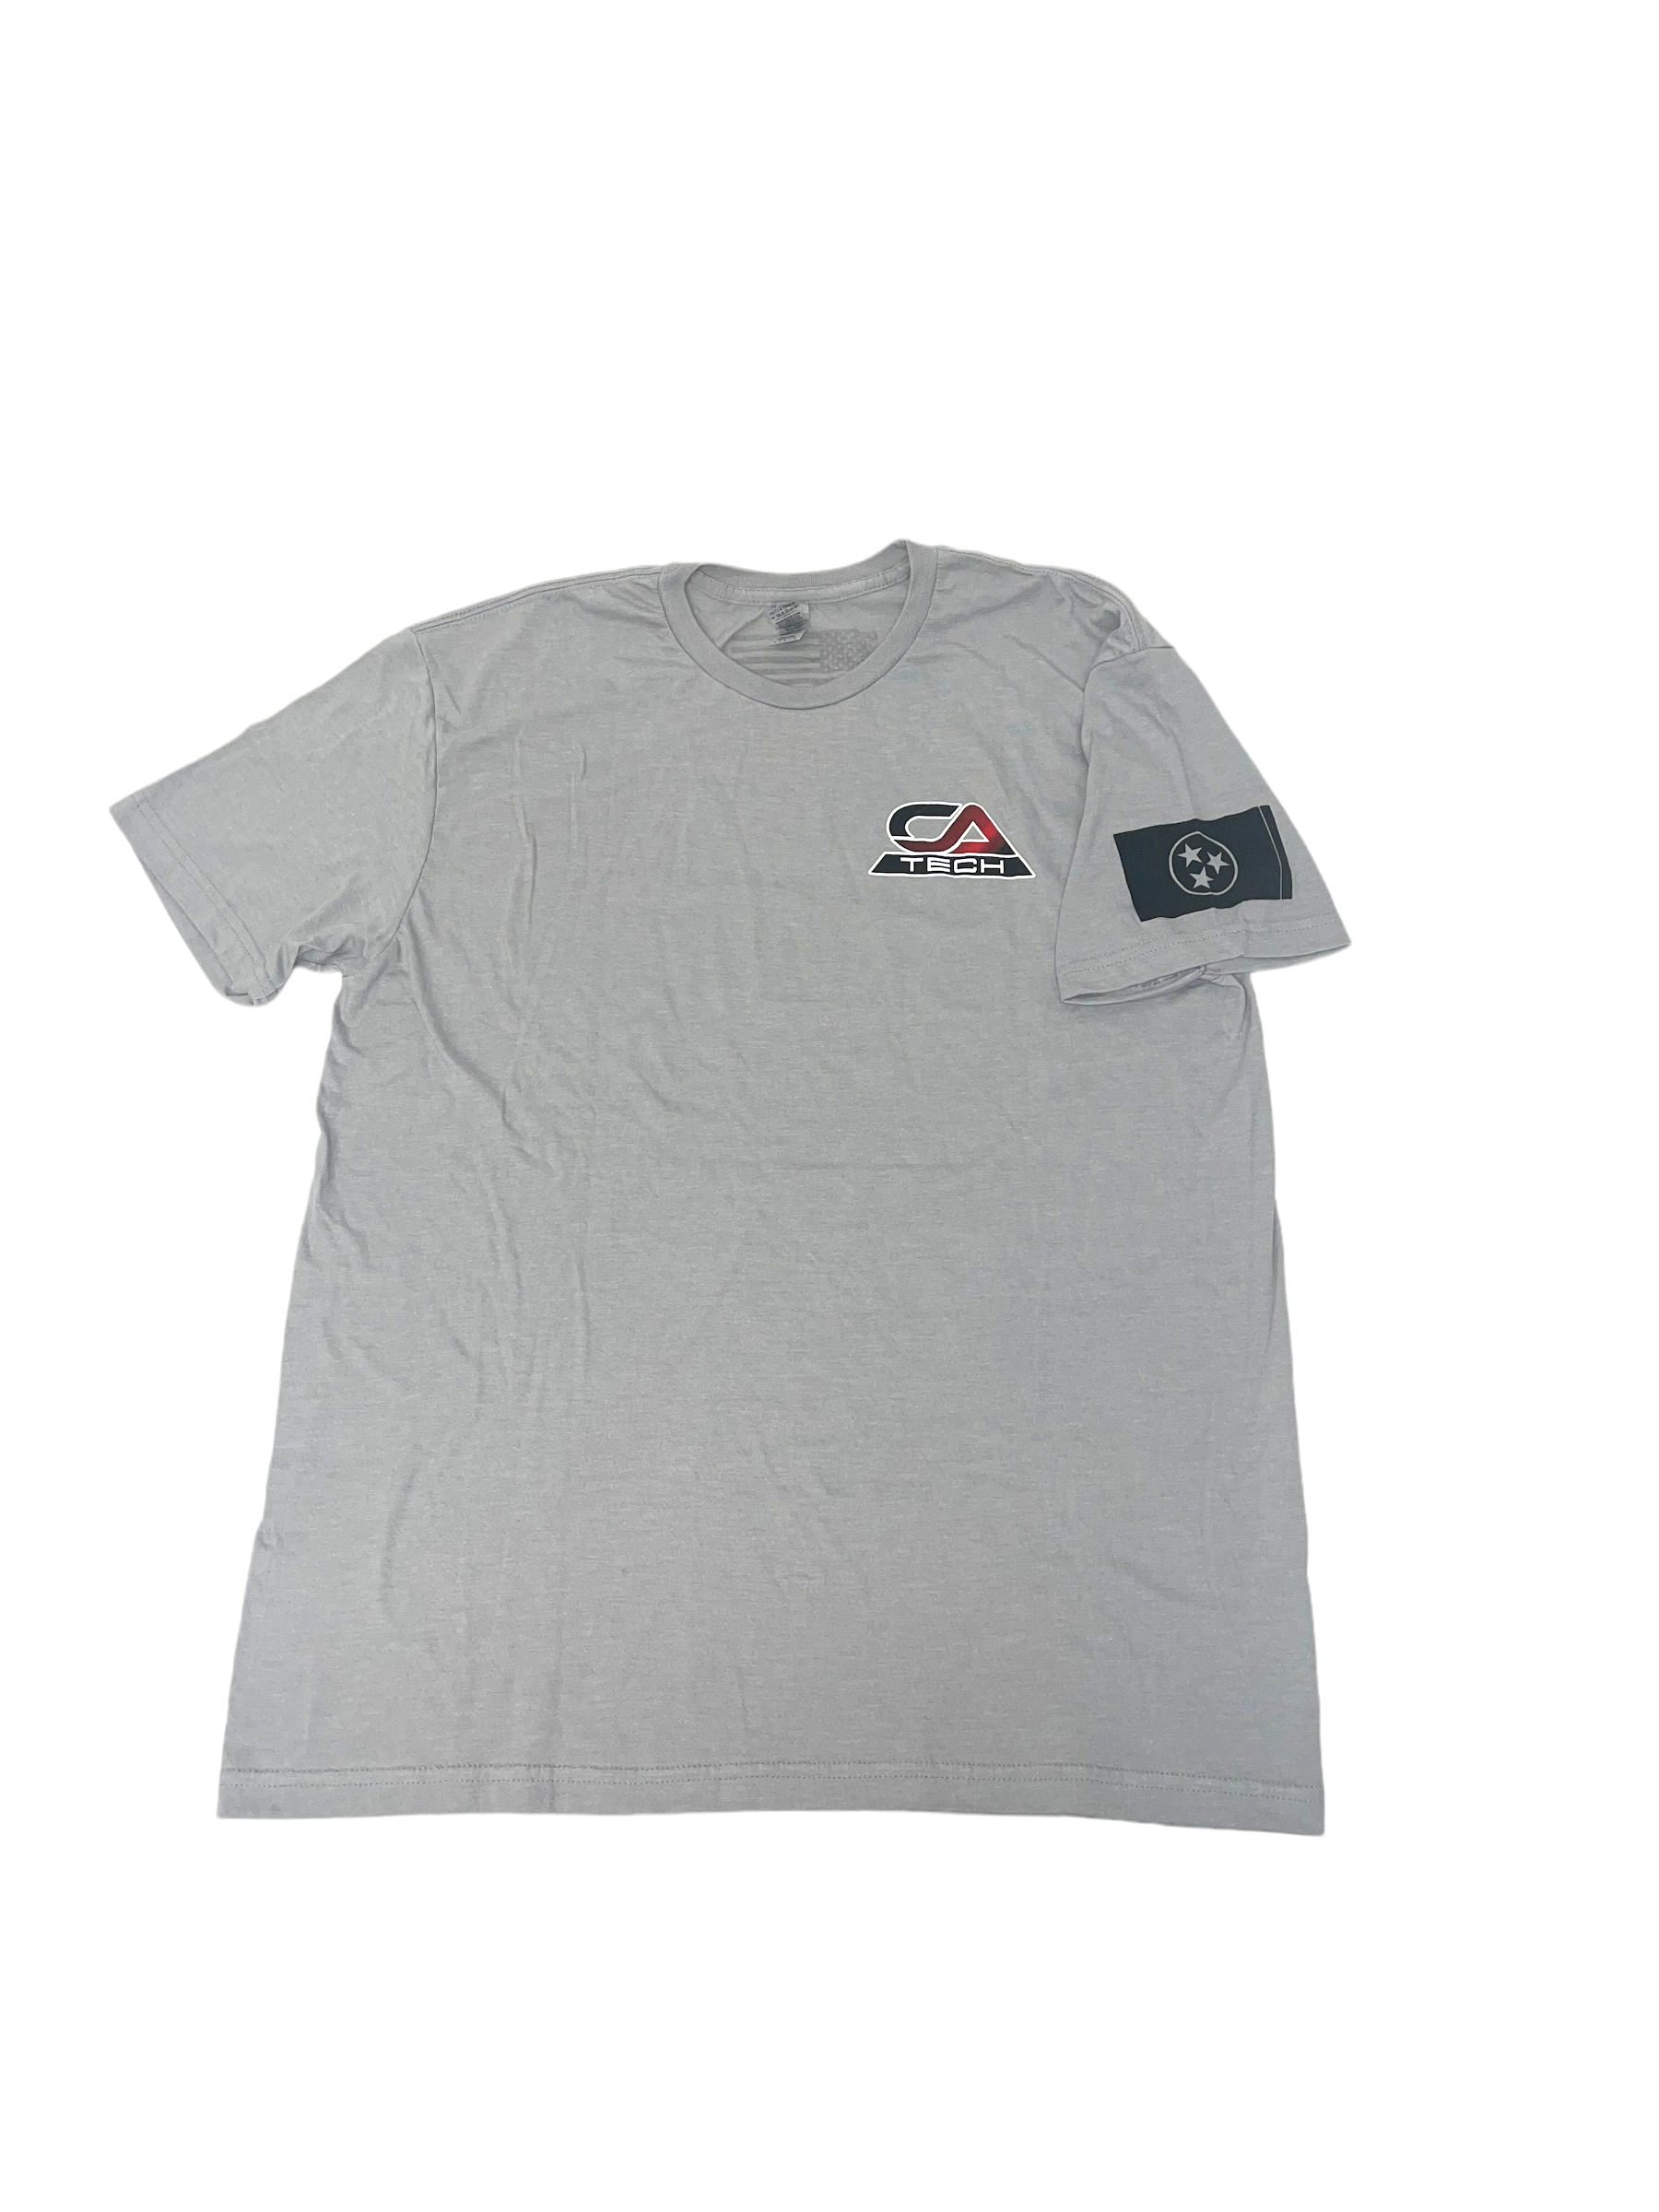 Short Sleeve Shirt CA Logo